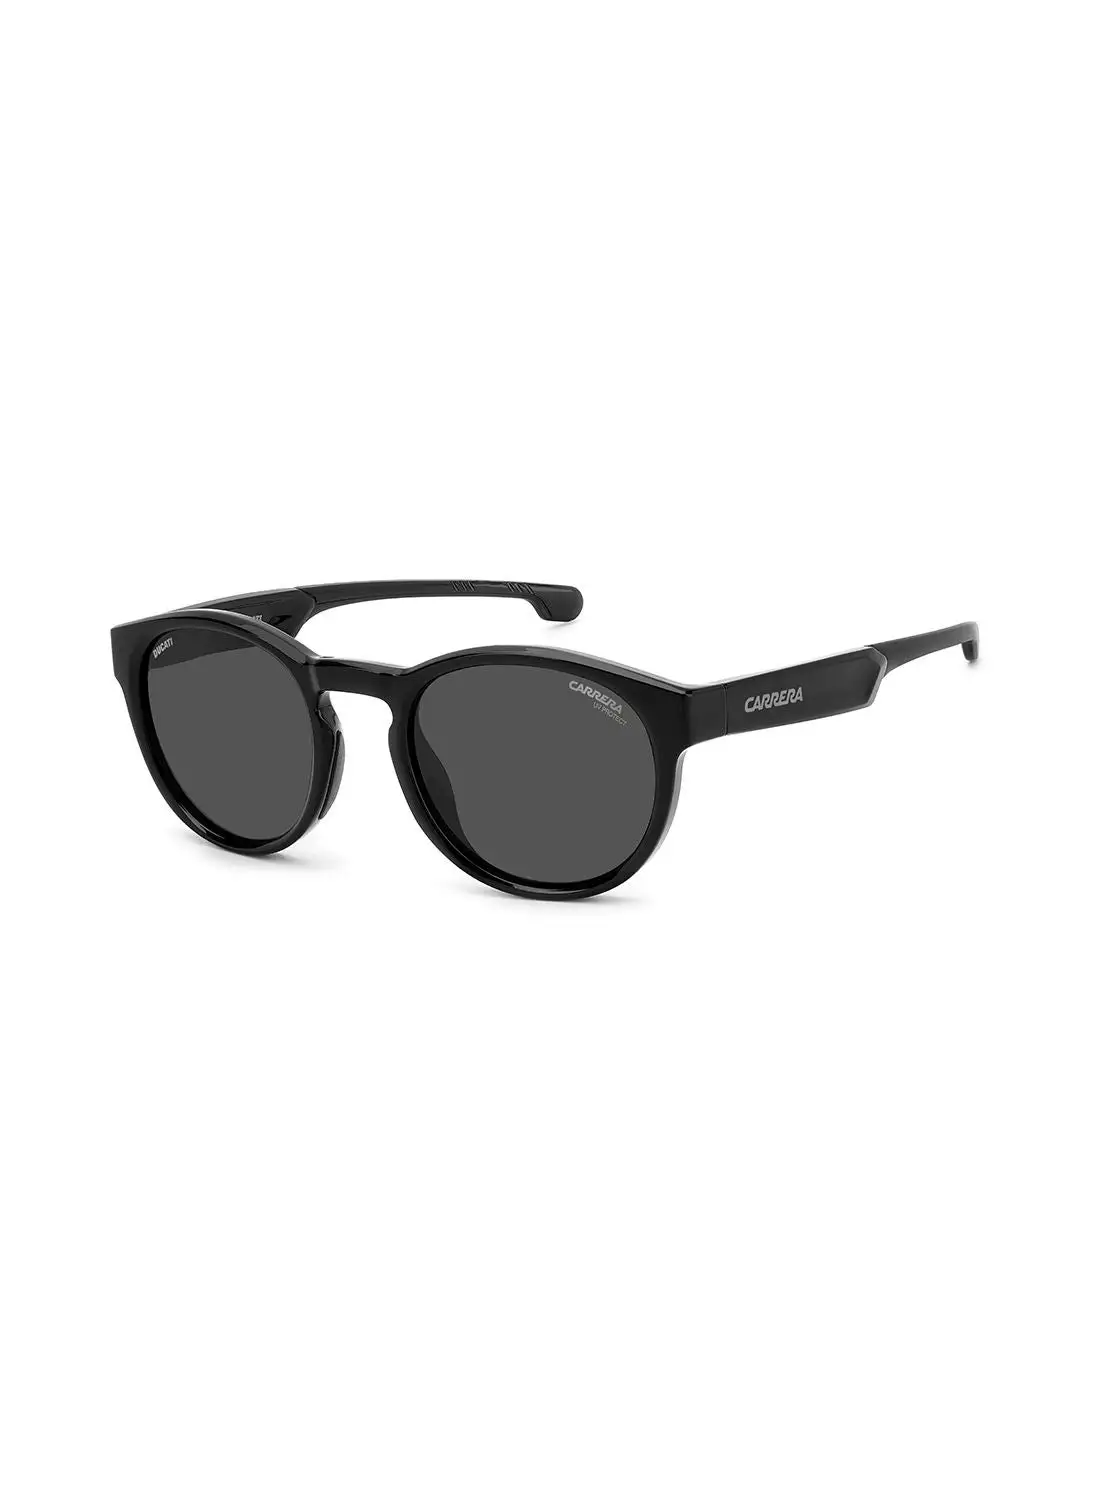 كاريرا نظارة شمسية دائرية للحماية من الأشعة فوق البنفسجية للرجال - Carduc 012/S Black 51 - مقاس العدسة: 51 ملم